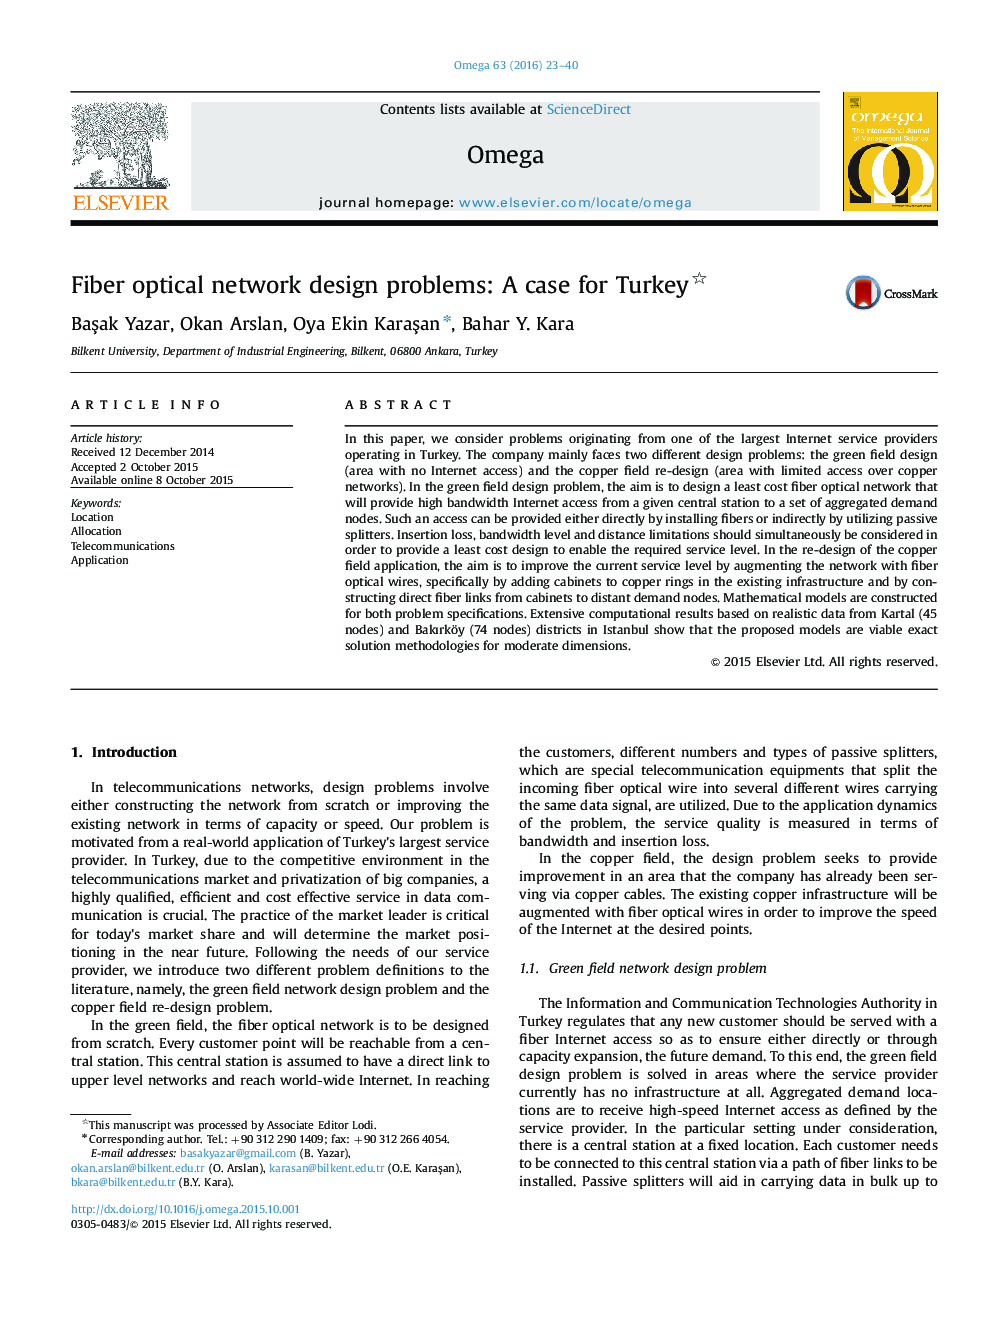 مشکلات طراحی شبکه های نوری فیبری: مورد برای ترکیه 